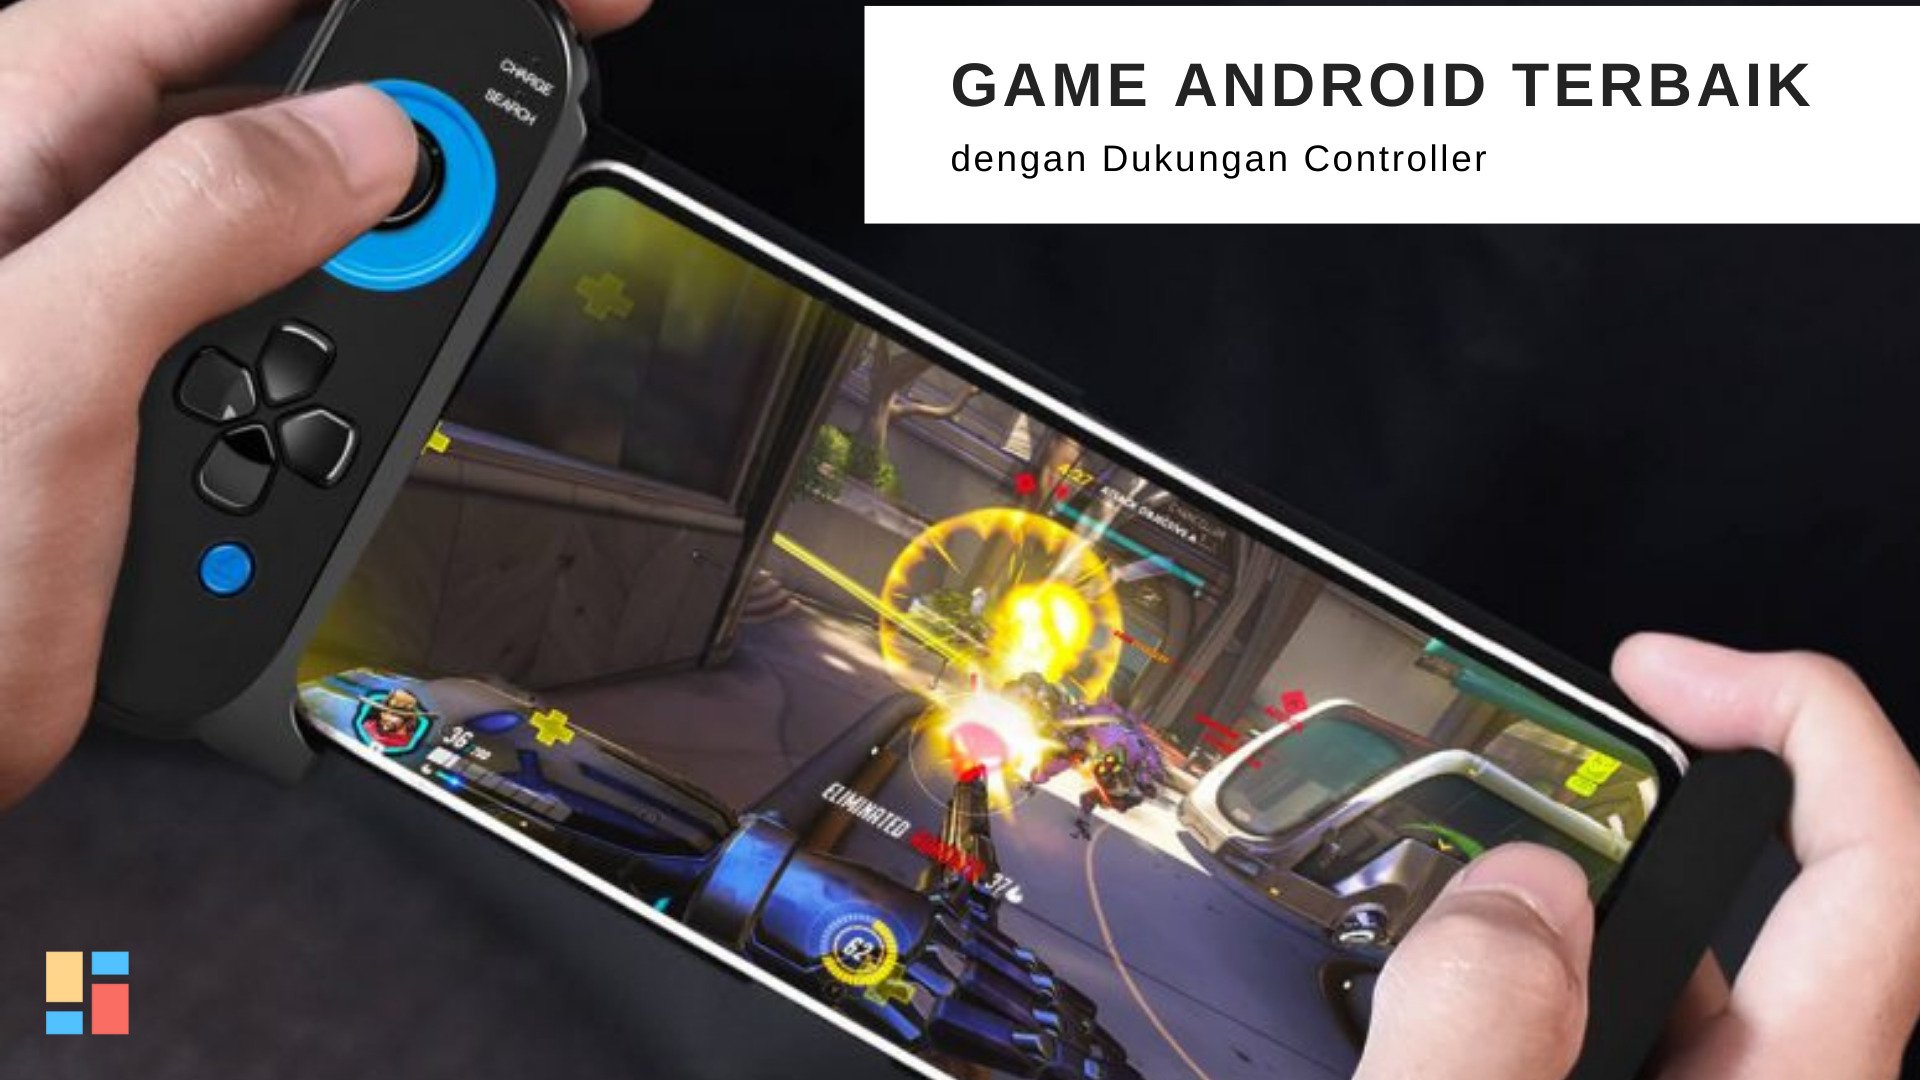 9 Game Android Terbaik dengan Dukungan Controller